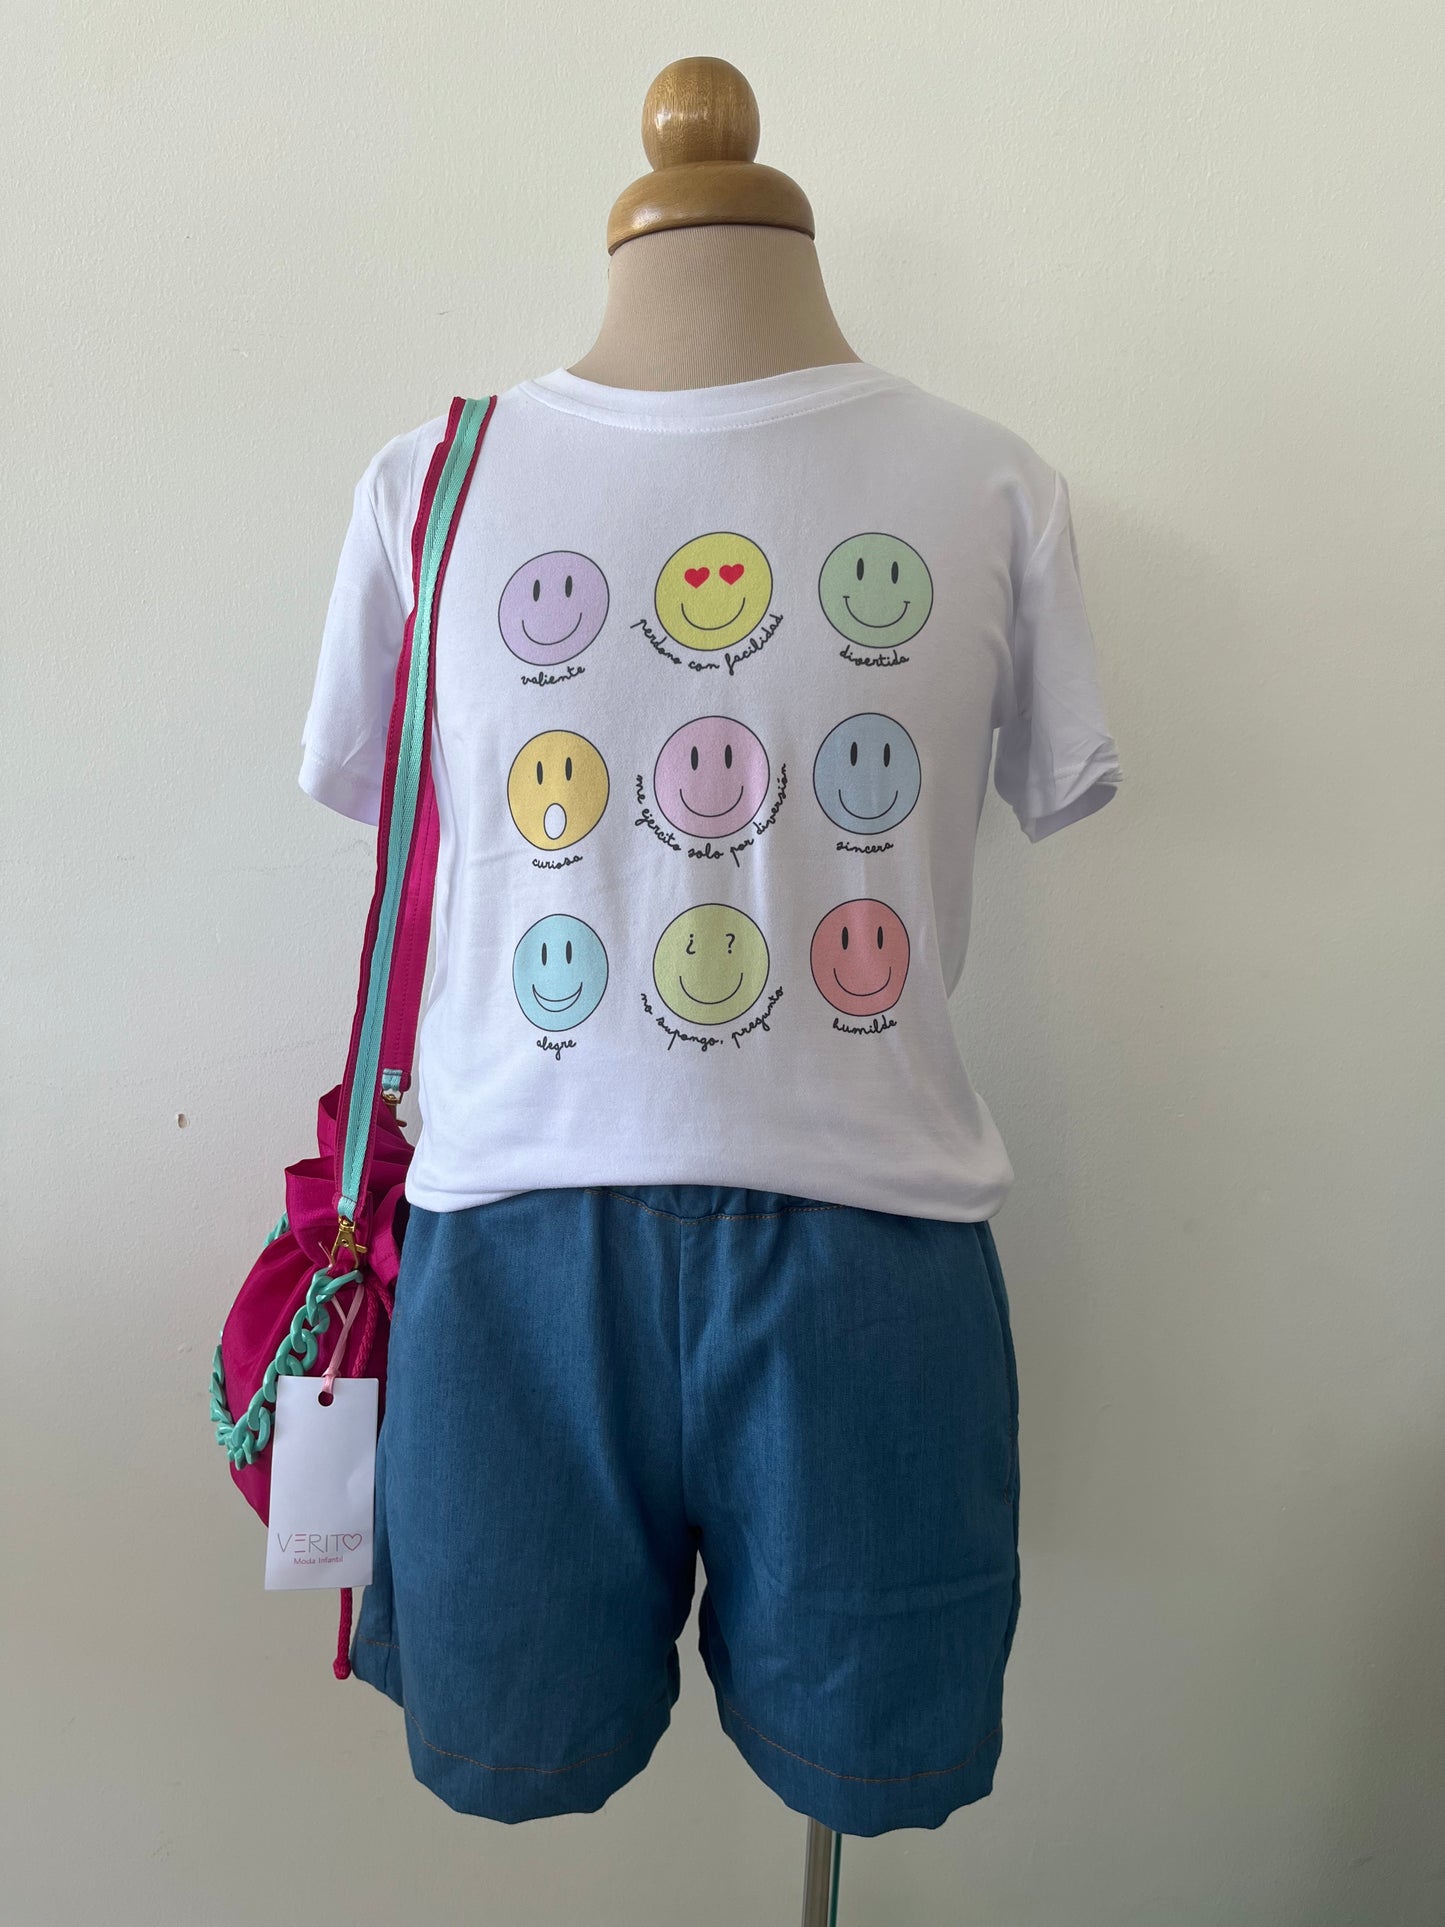 outfit de short en tela tipo denim liviano con camiseta de caritas felices de varios colores y mochila fucsia con turquesa